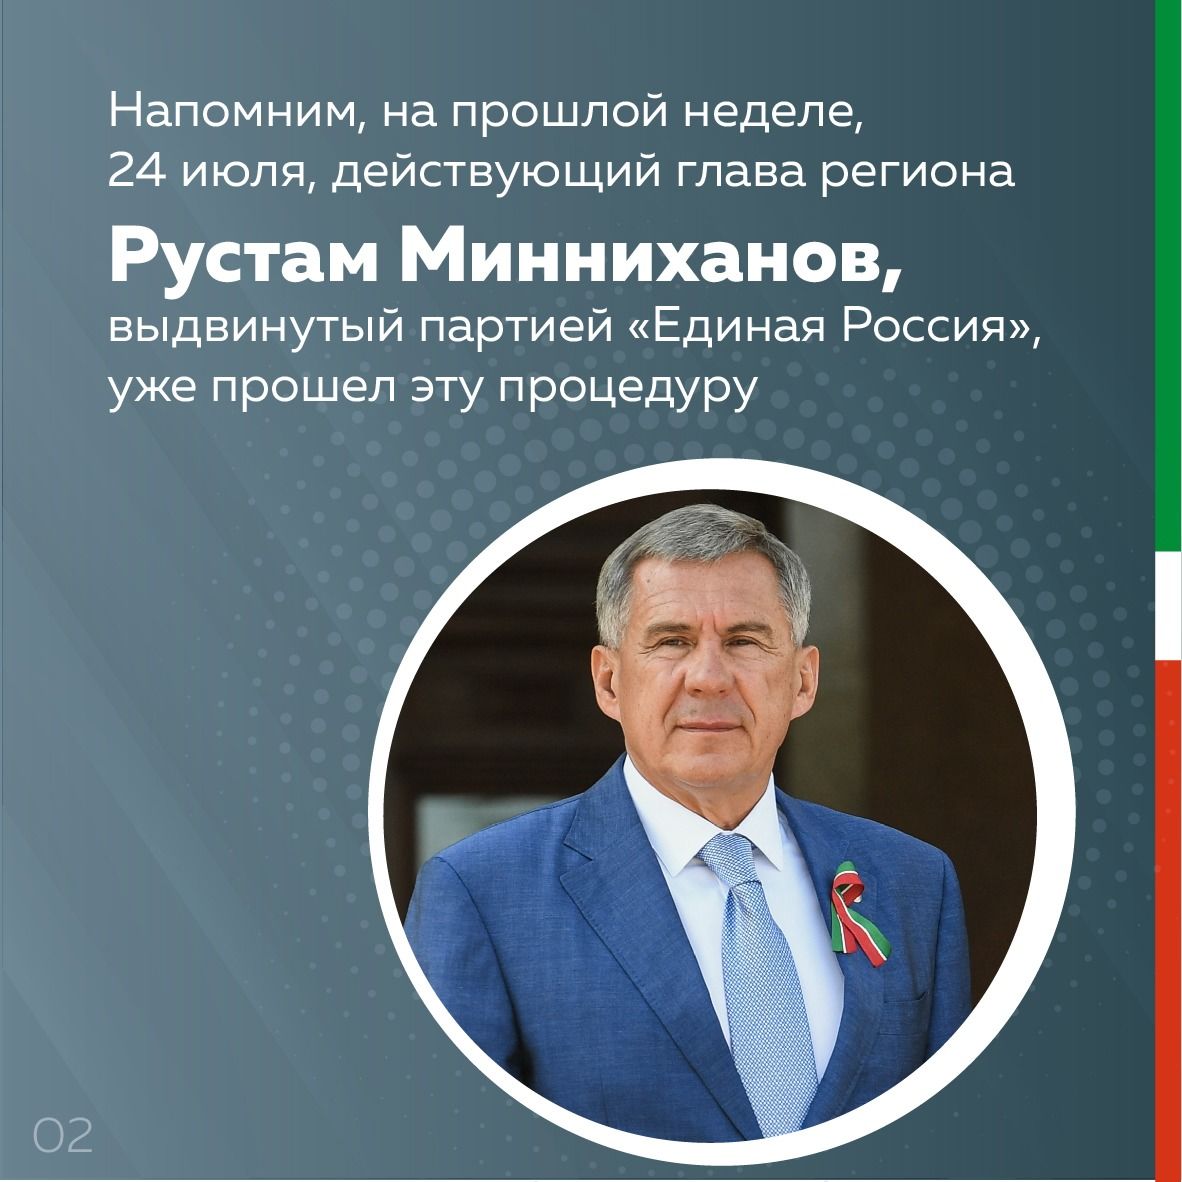 ЦИК Татарстана зарегистрировал еще 4-х кандидатов в Президенты РТ от региональных отделений политических партий